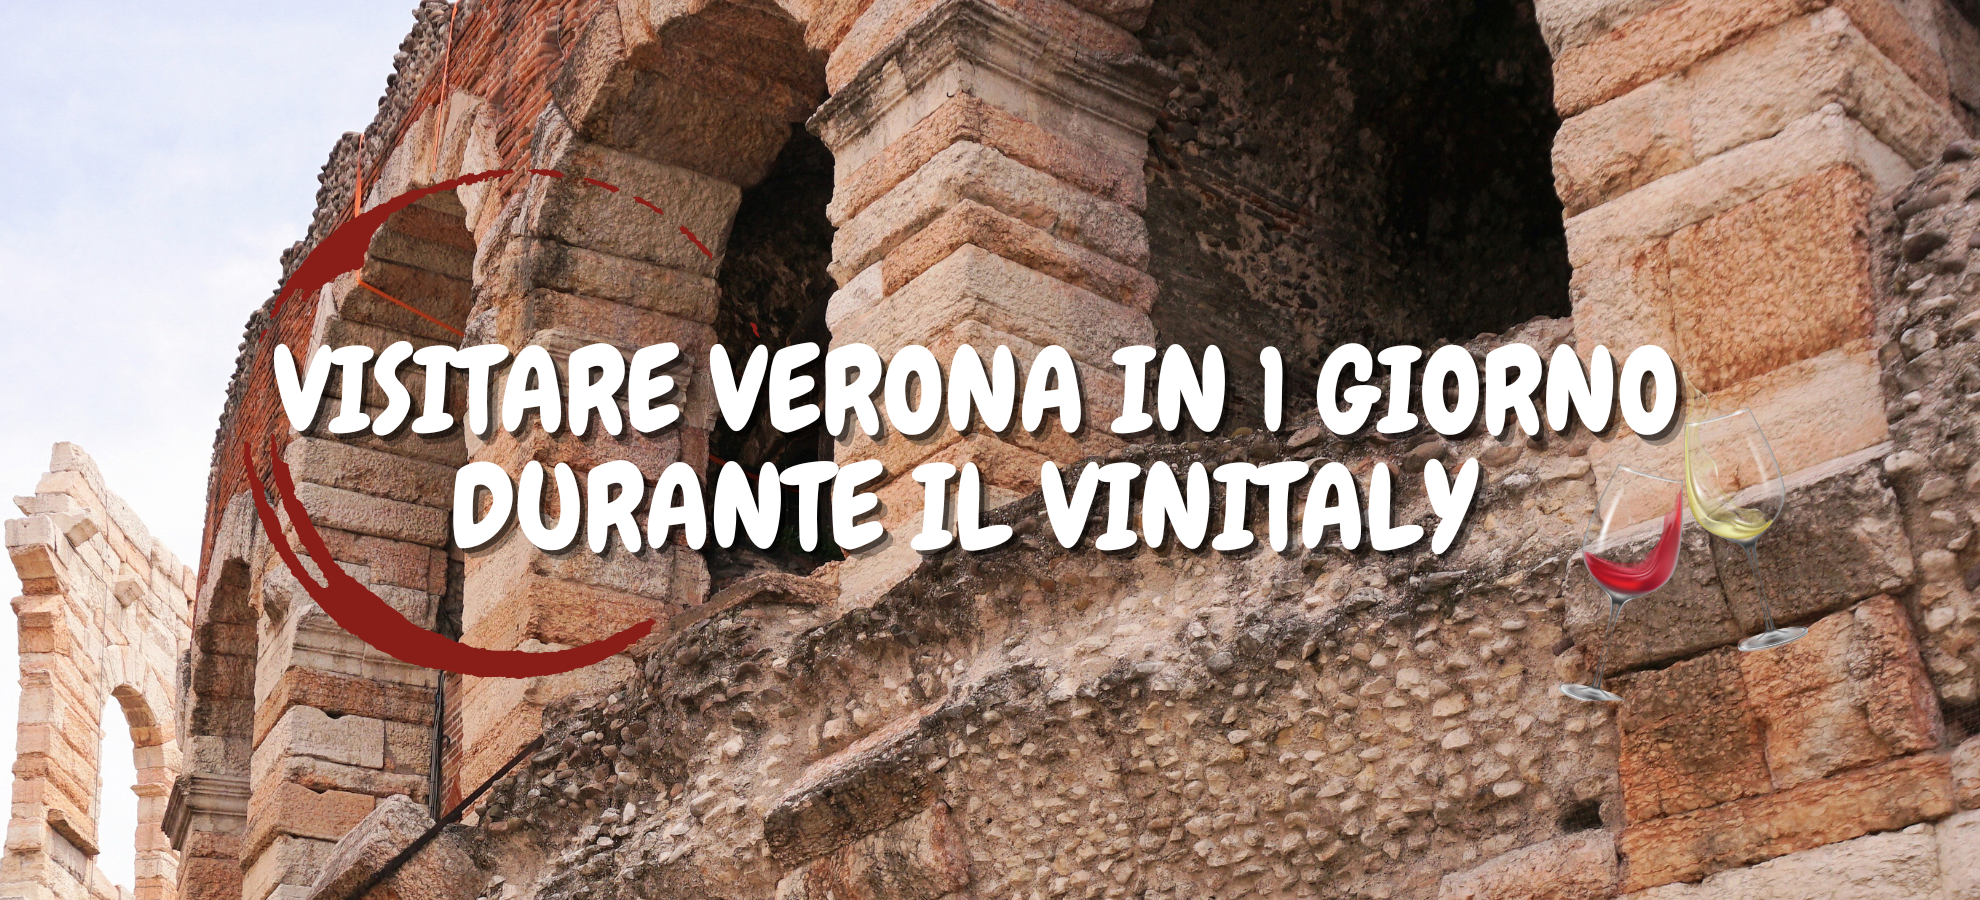 Visitare Verona in 1 giorno durante il Vinitaly